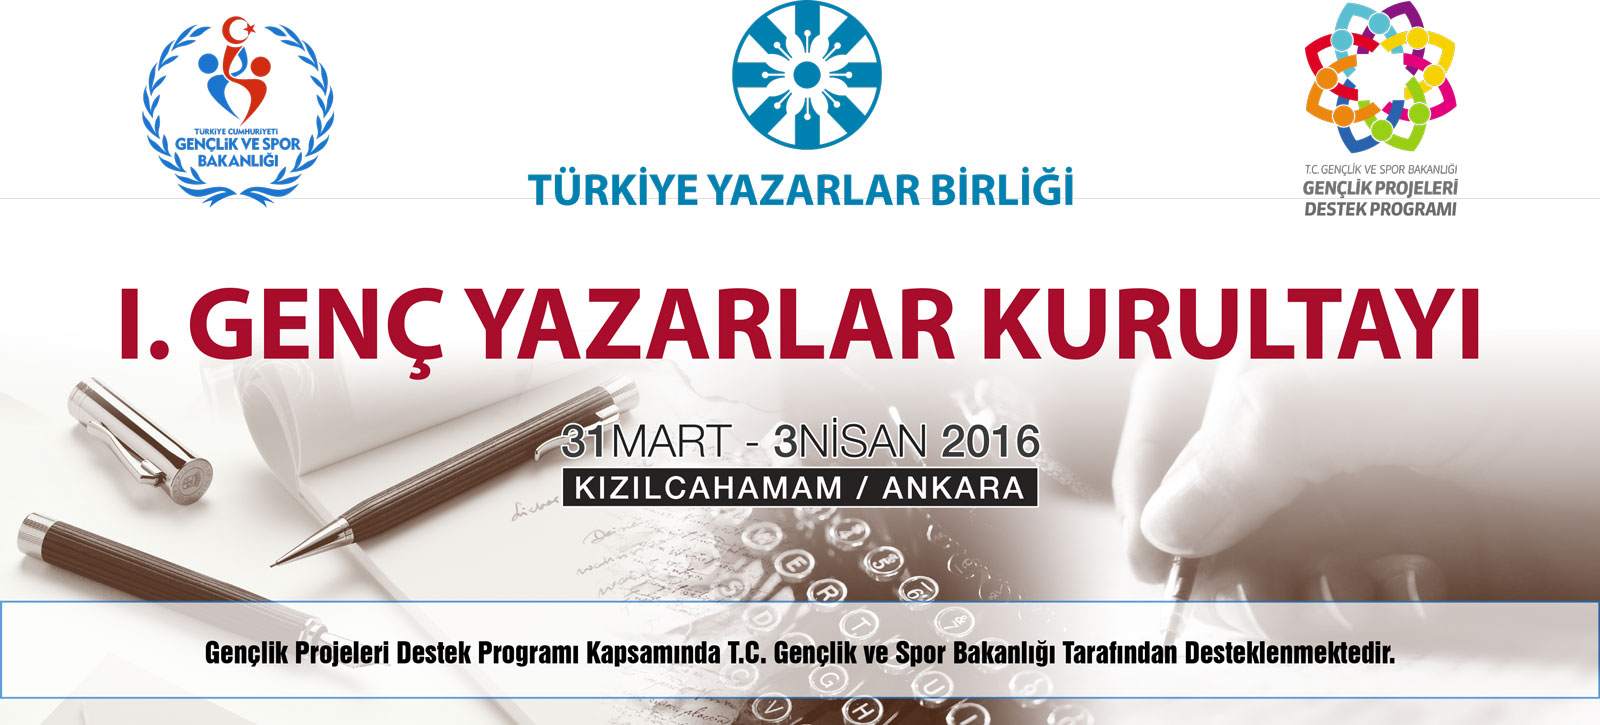 Türkiye'nin İlk Genç Yazarlar Kurultayı Bugün başlıyor